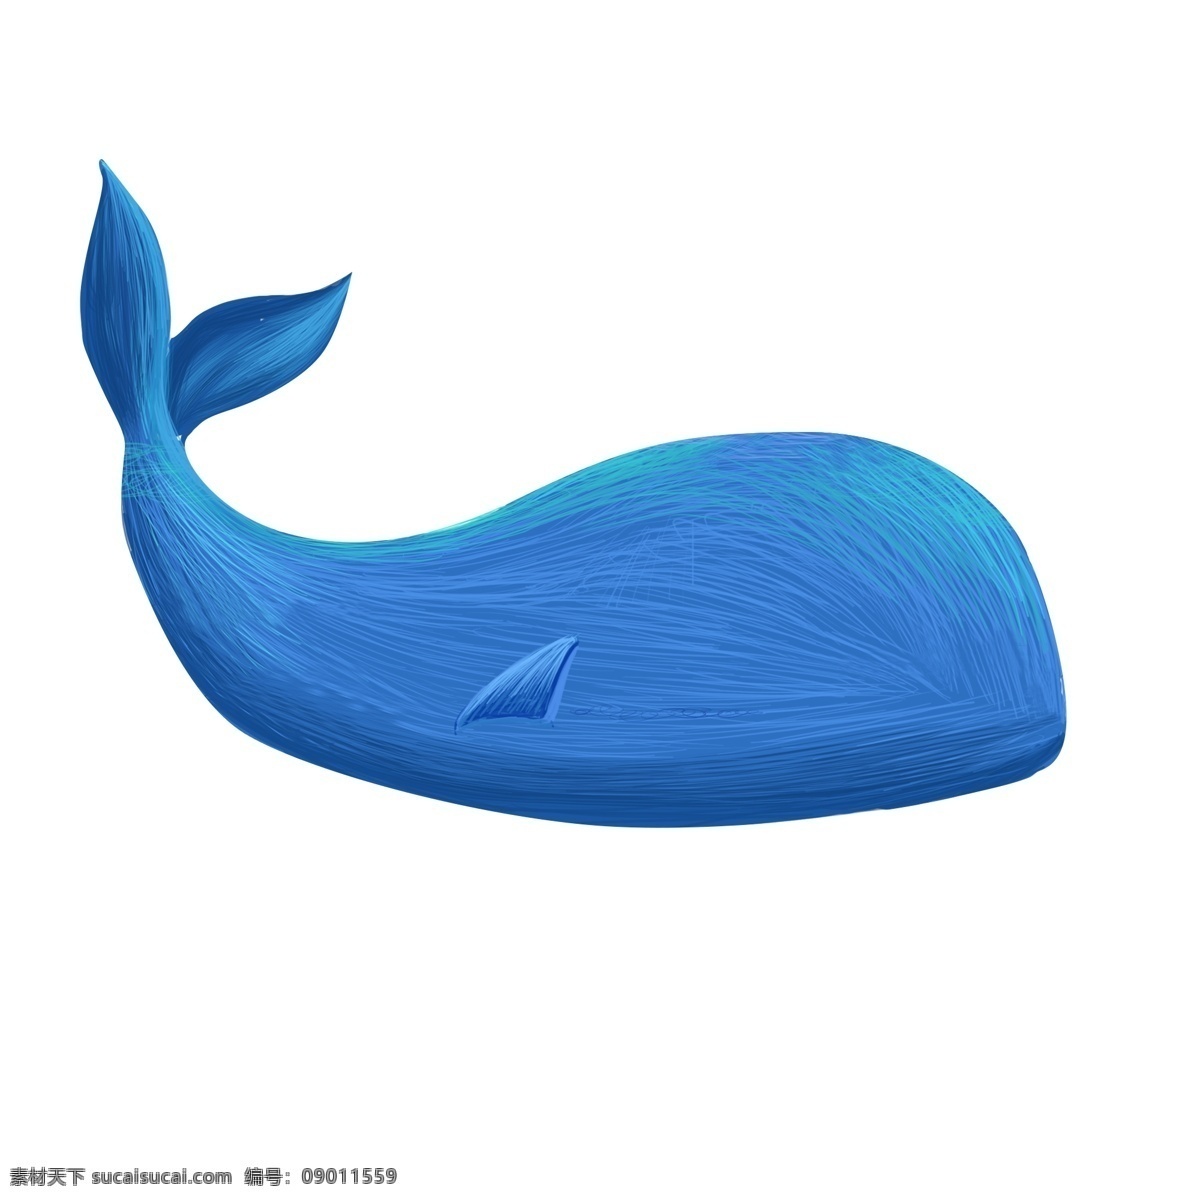 鲸鱼 鲨鱼 海豚 线圈 画 扁平 渐变 蓝色 小清新 插画 线圈画 扁平风 渐变风 海底动物 线圈印象